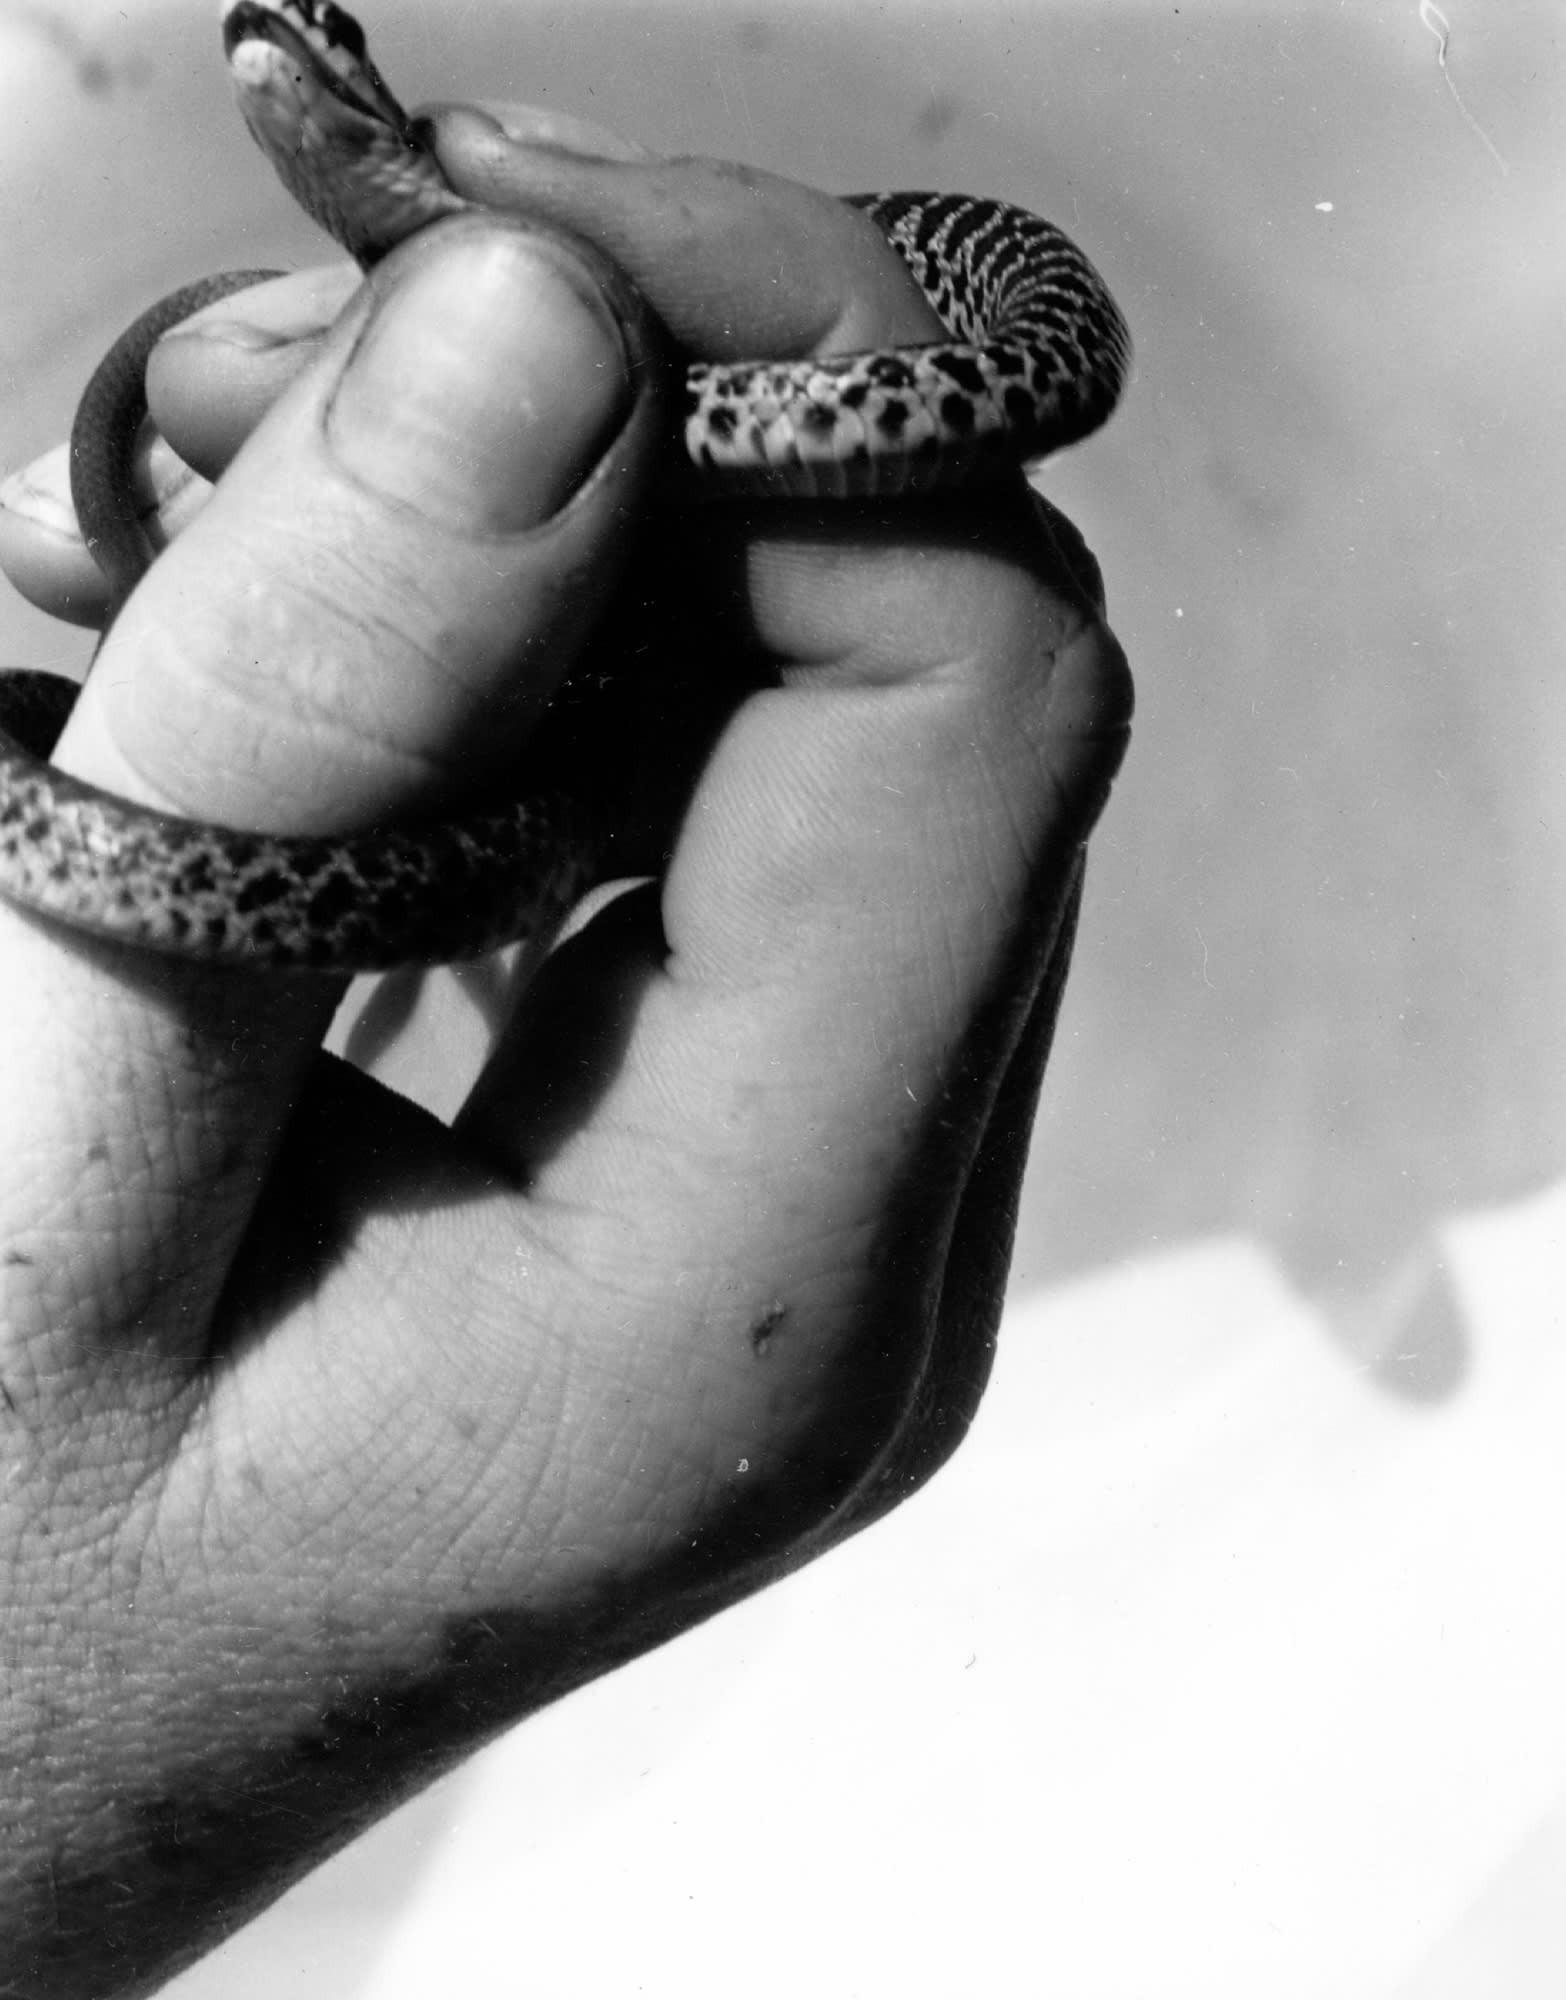 Змея в руке. Фотограф Имоджен Каннингем